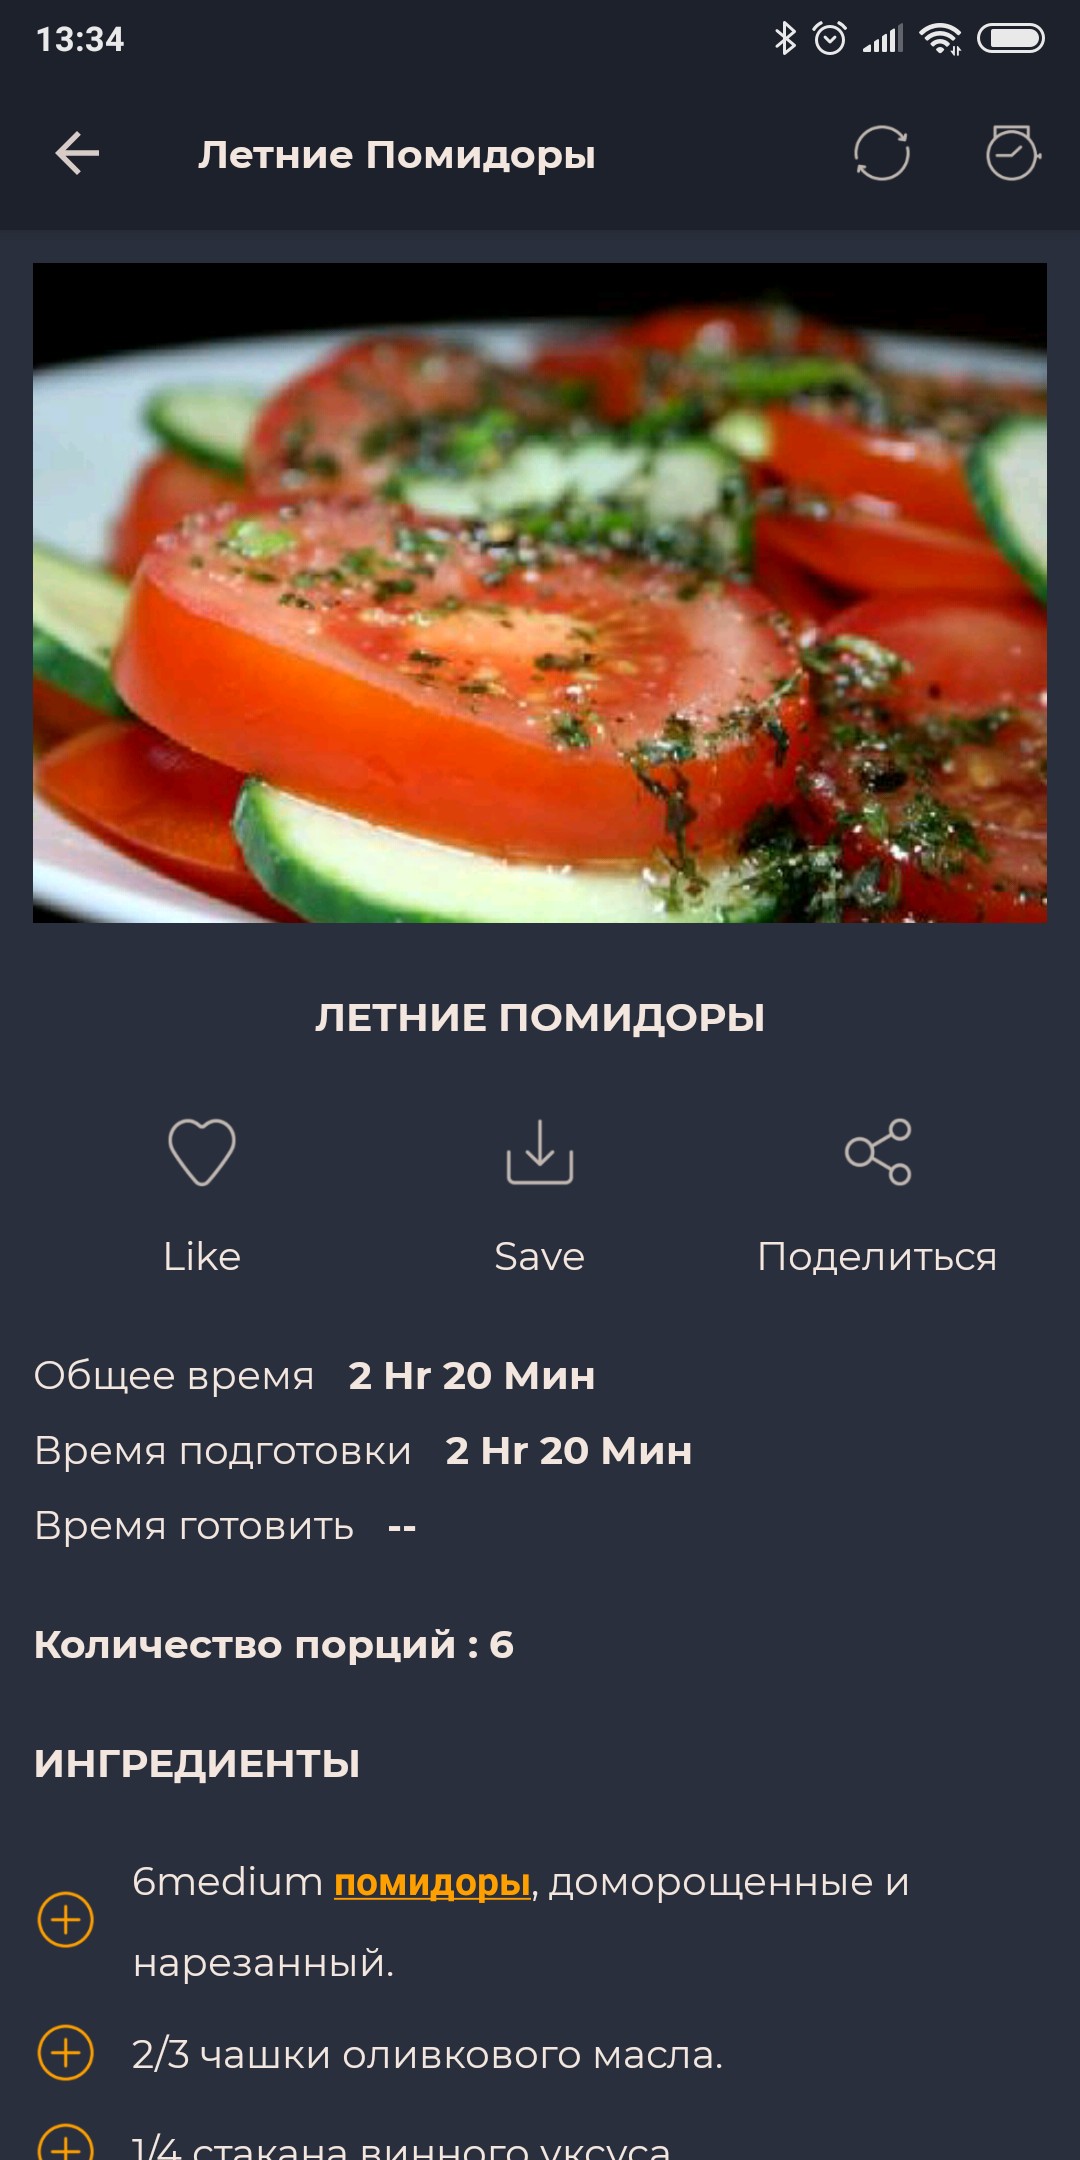 paraskevat.ru — все посты пользователя